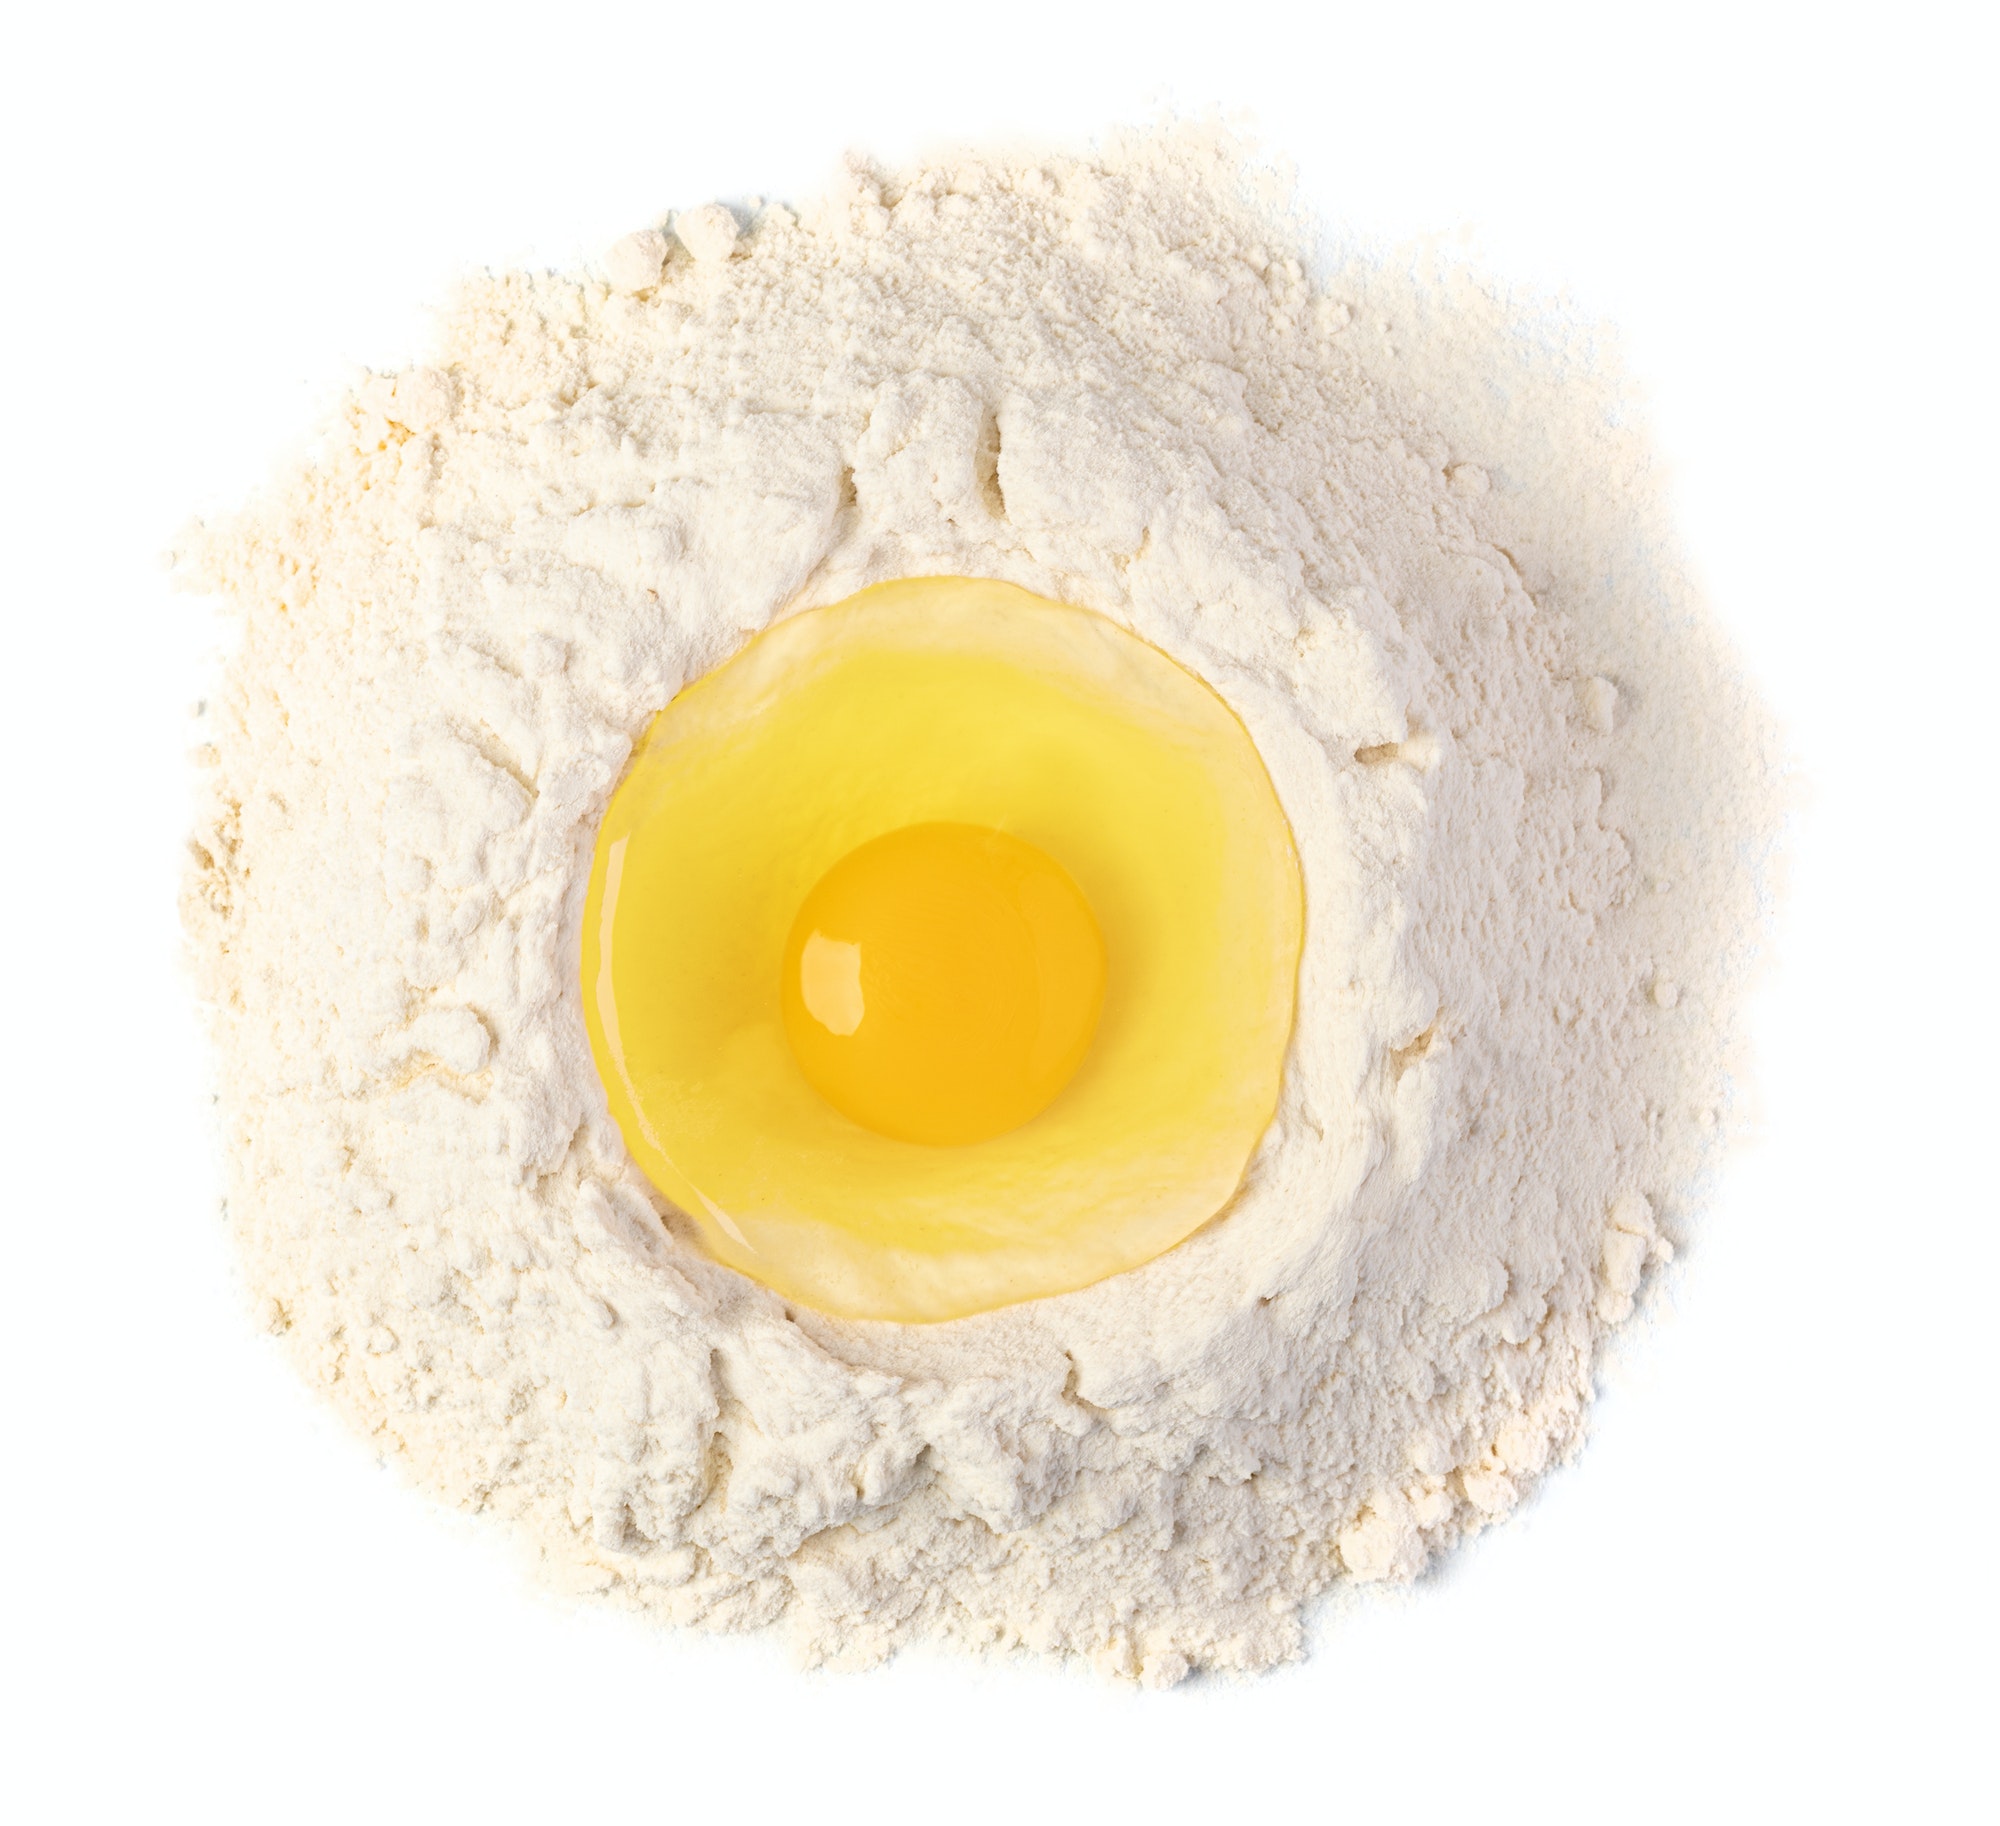 Broken egg on flour